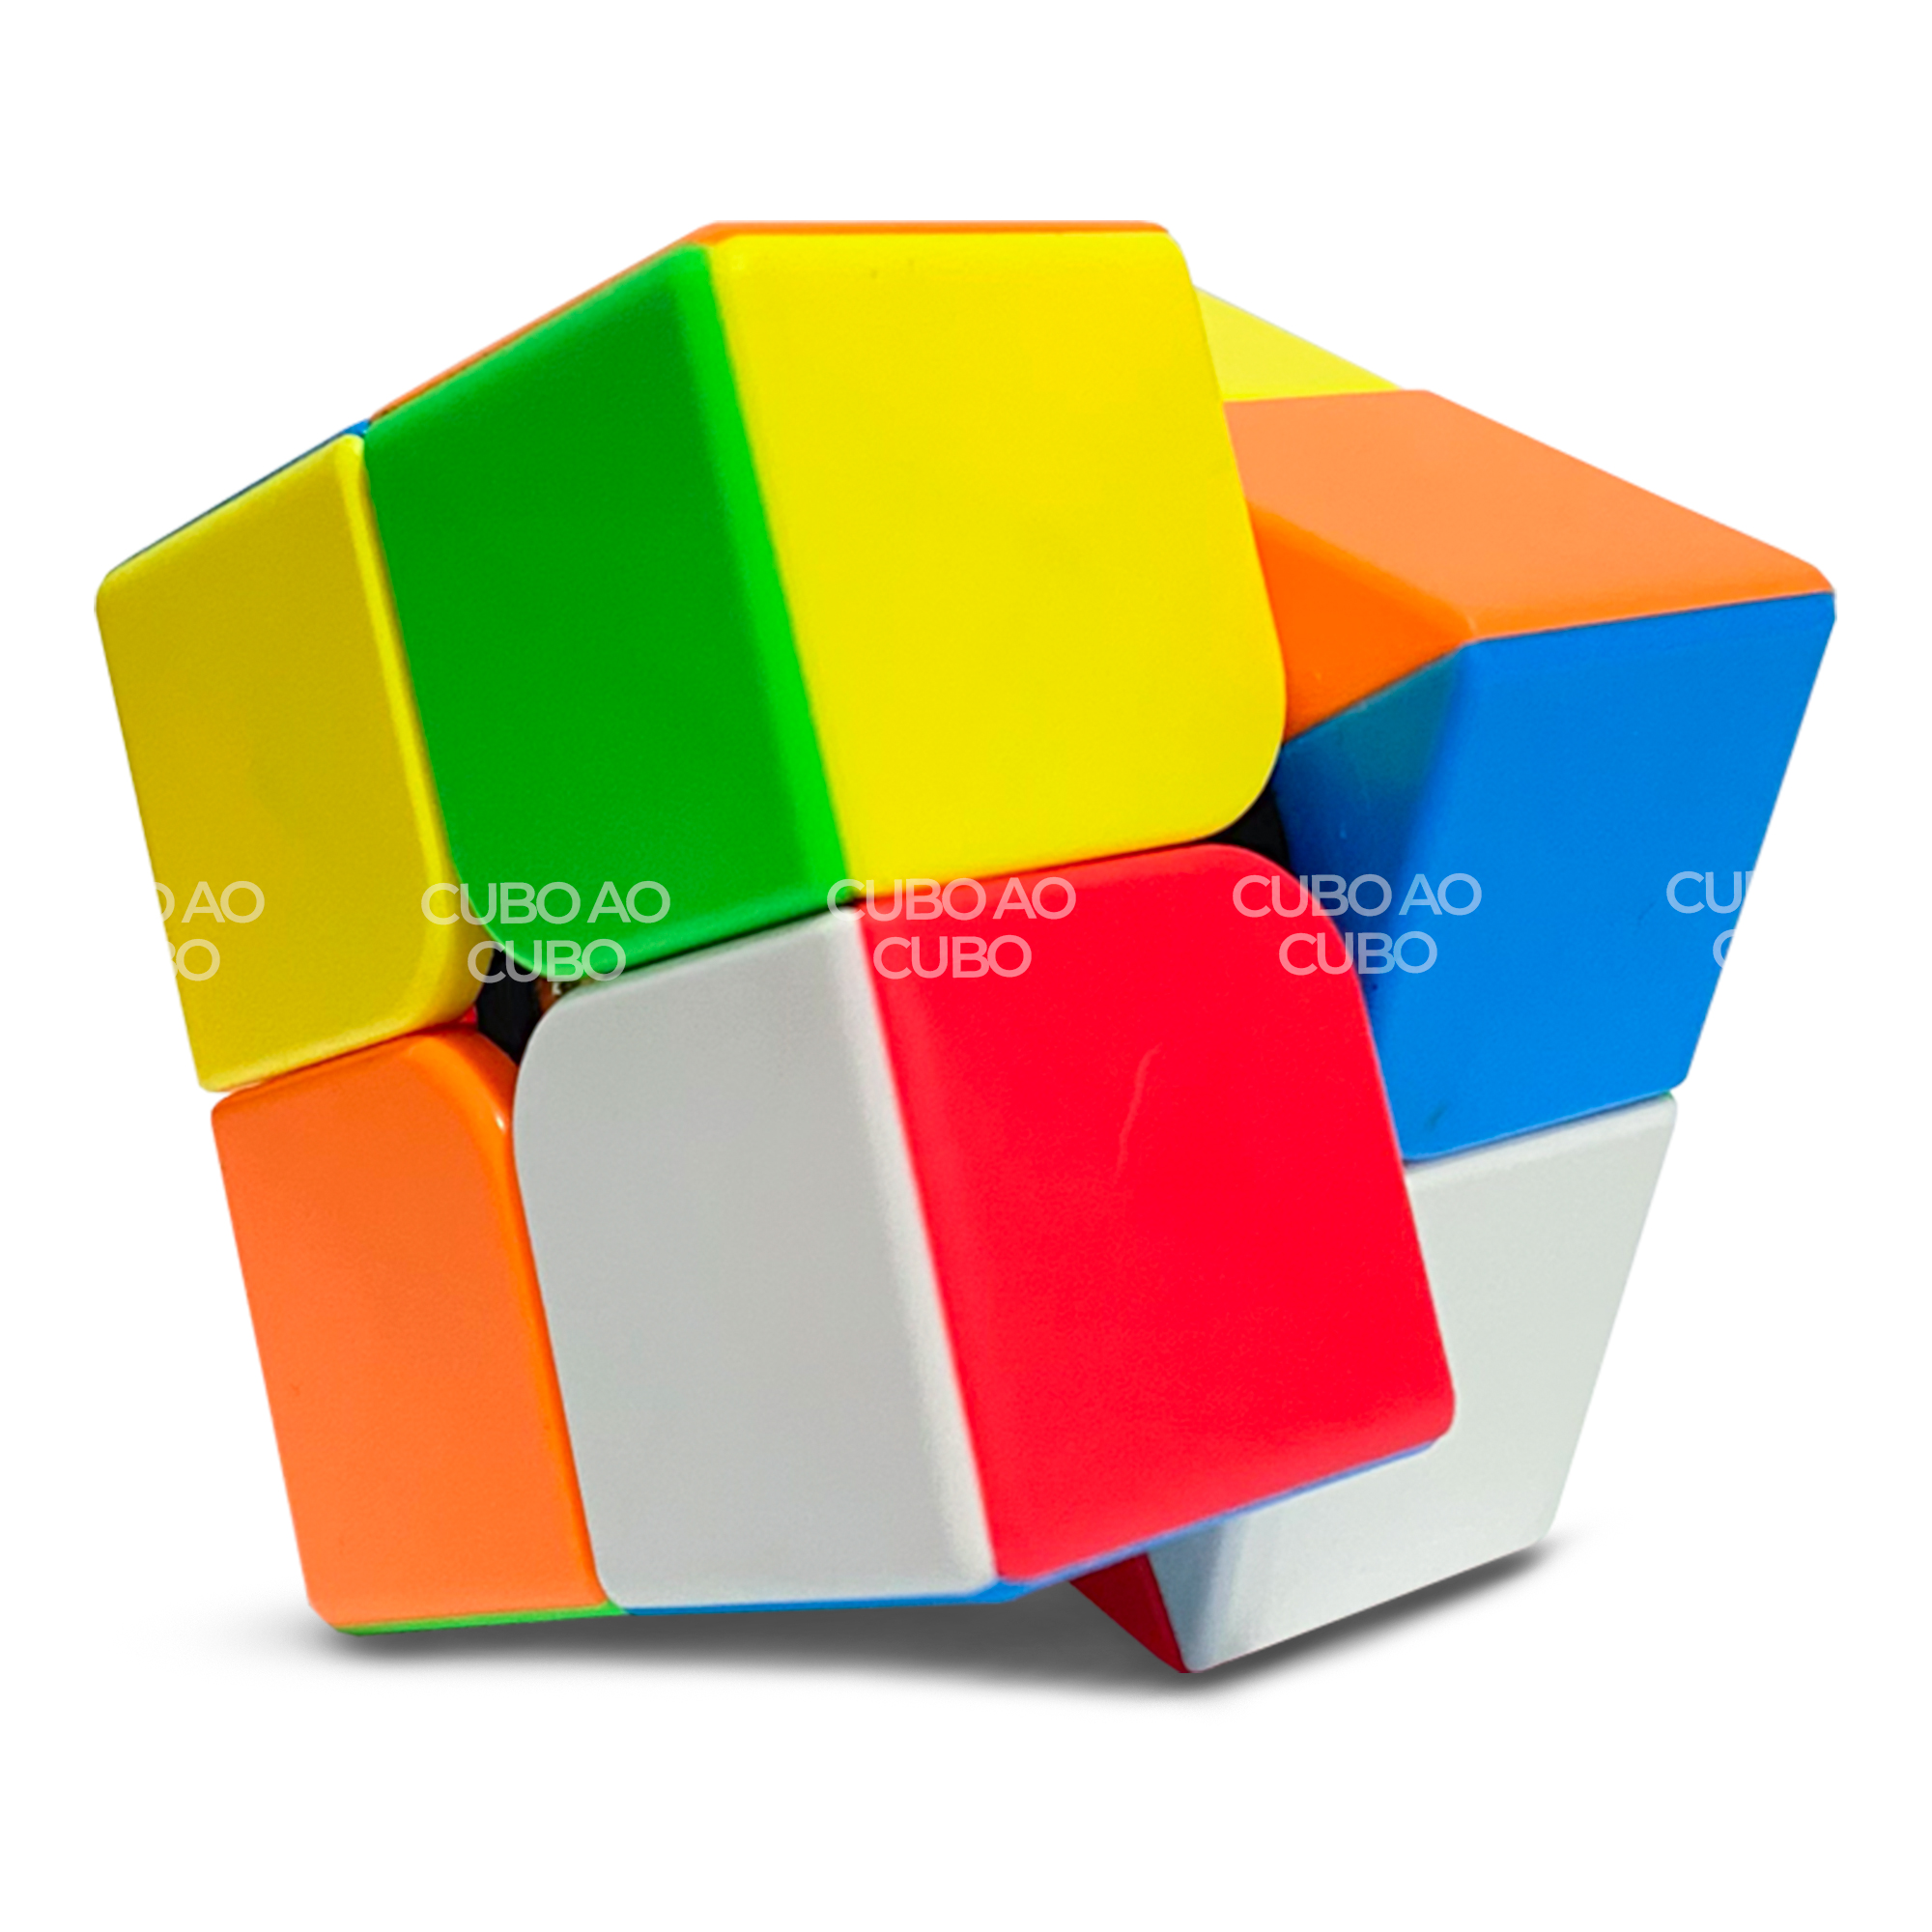 Cubo Magico 2X2 com Preços Incríveis no Shoptime